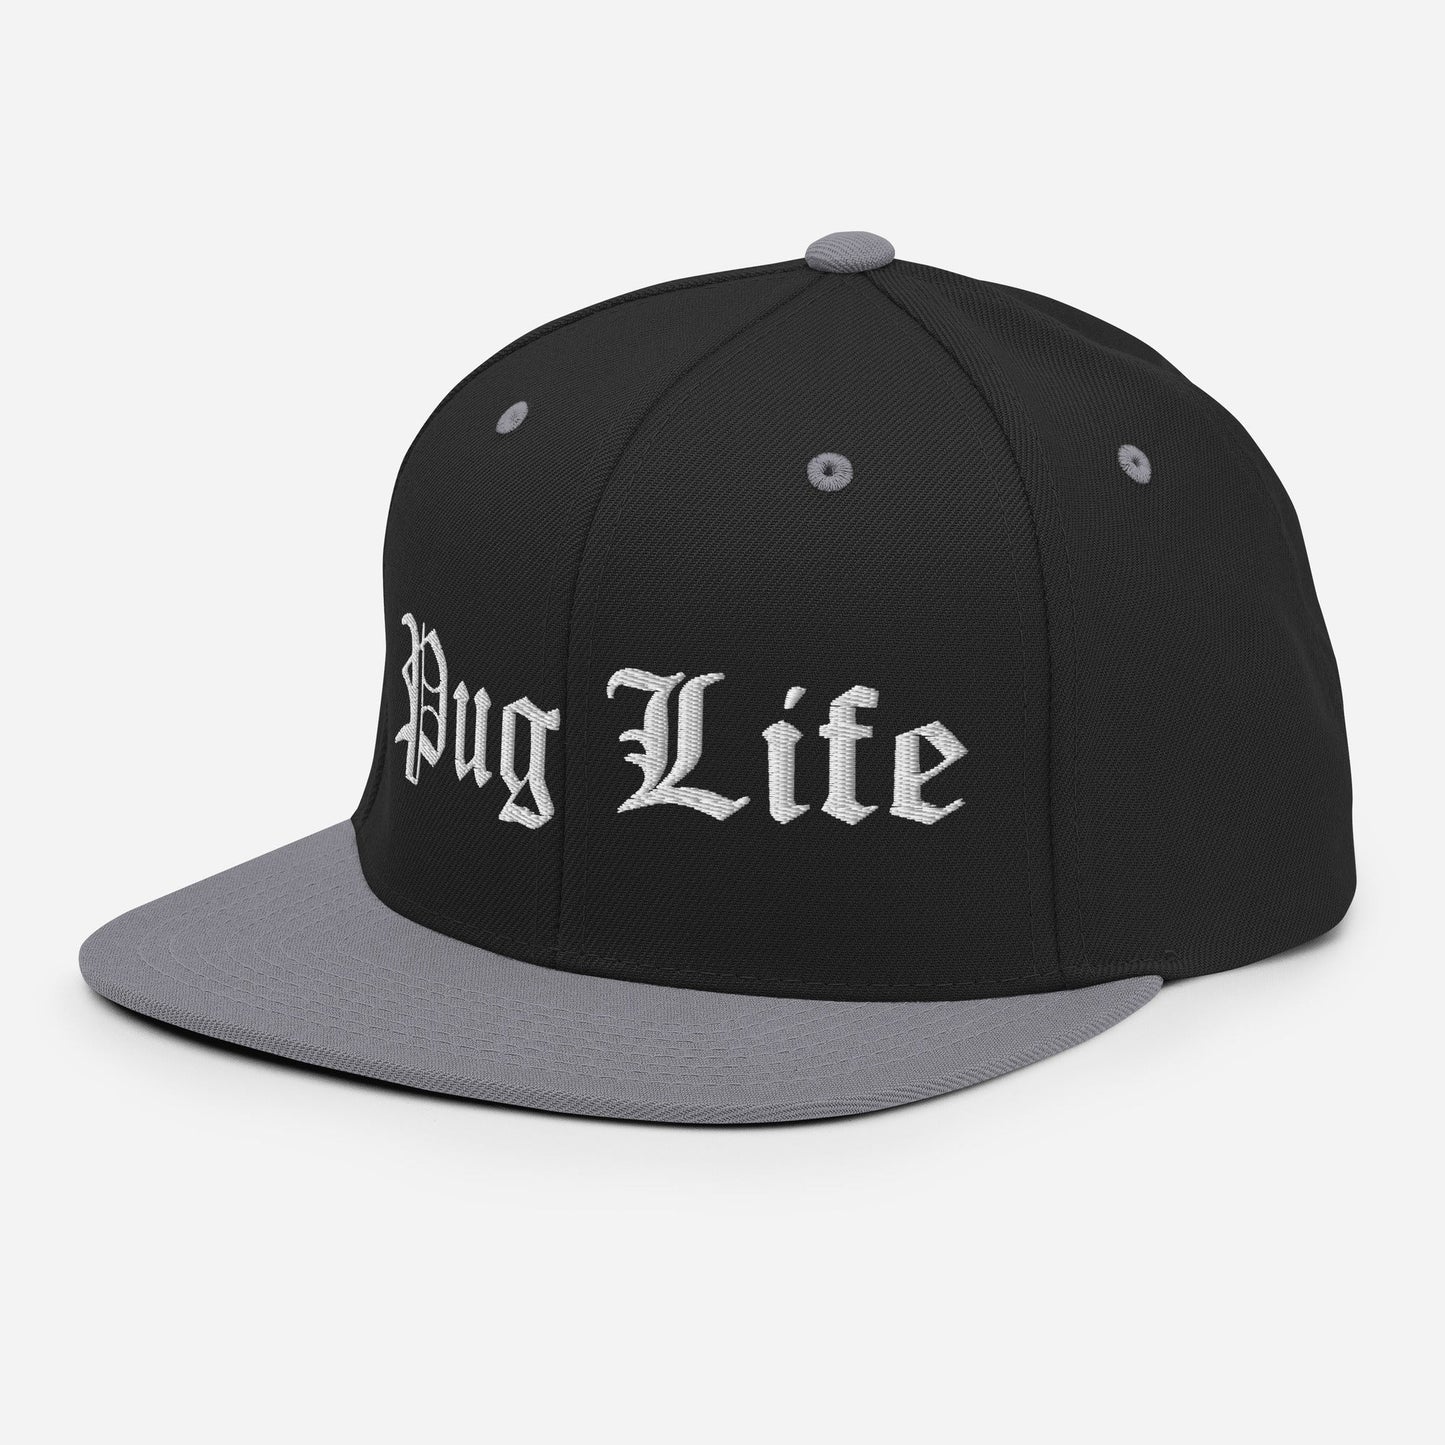 OG Pug Life Embroidered Snapback Hat - Premium  - Just $49.18! Shop now at Animal Bargain